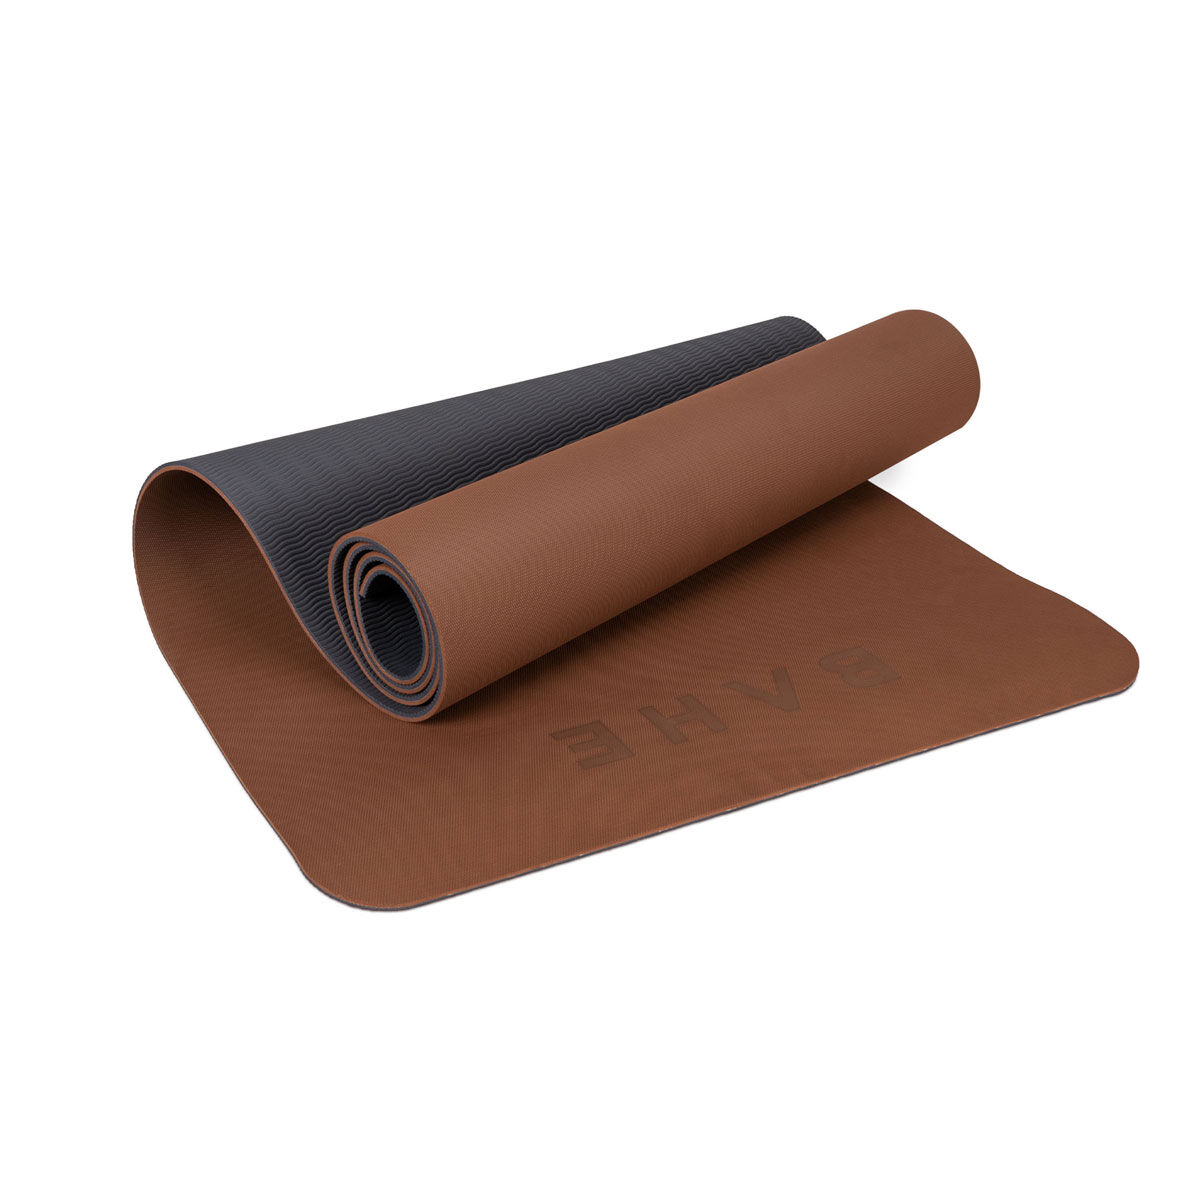 South Beach power yoga mat in brown